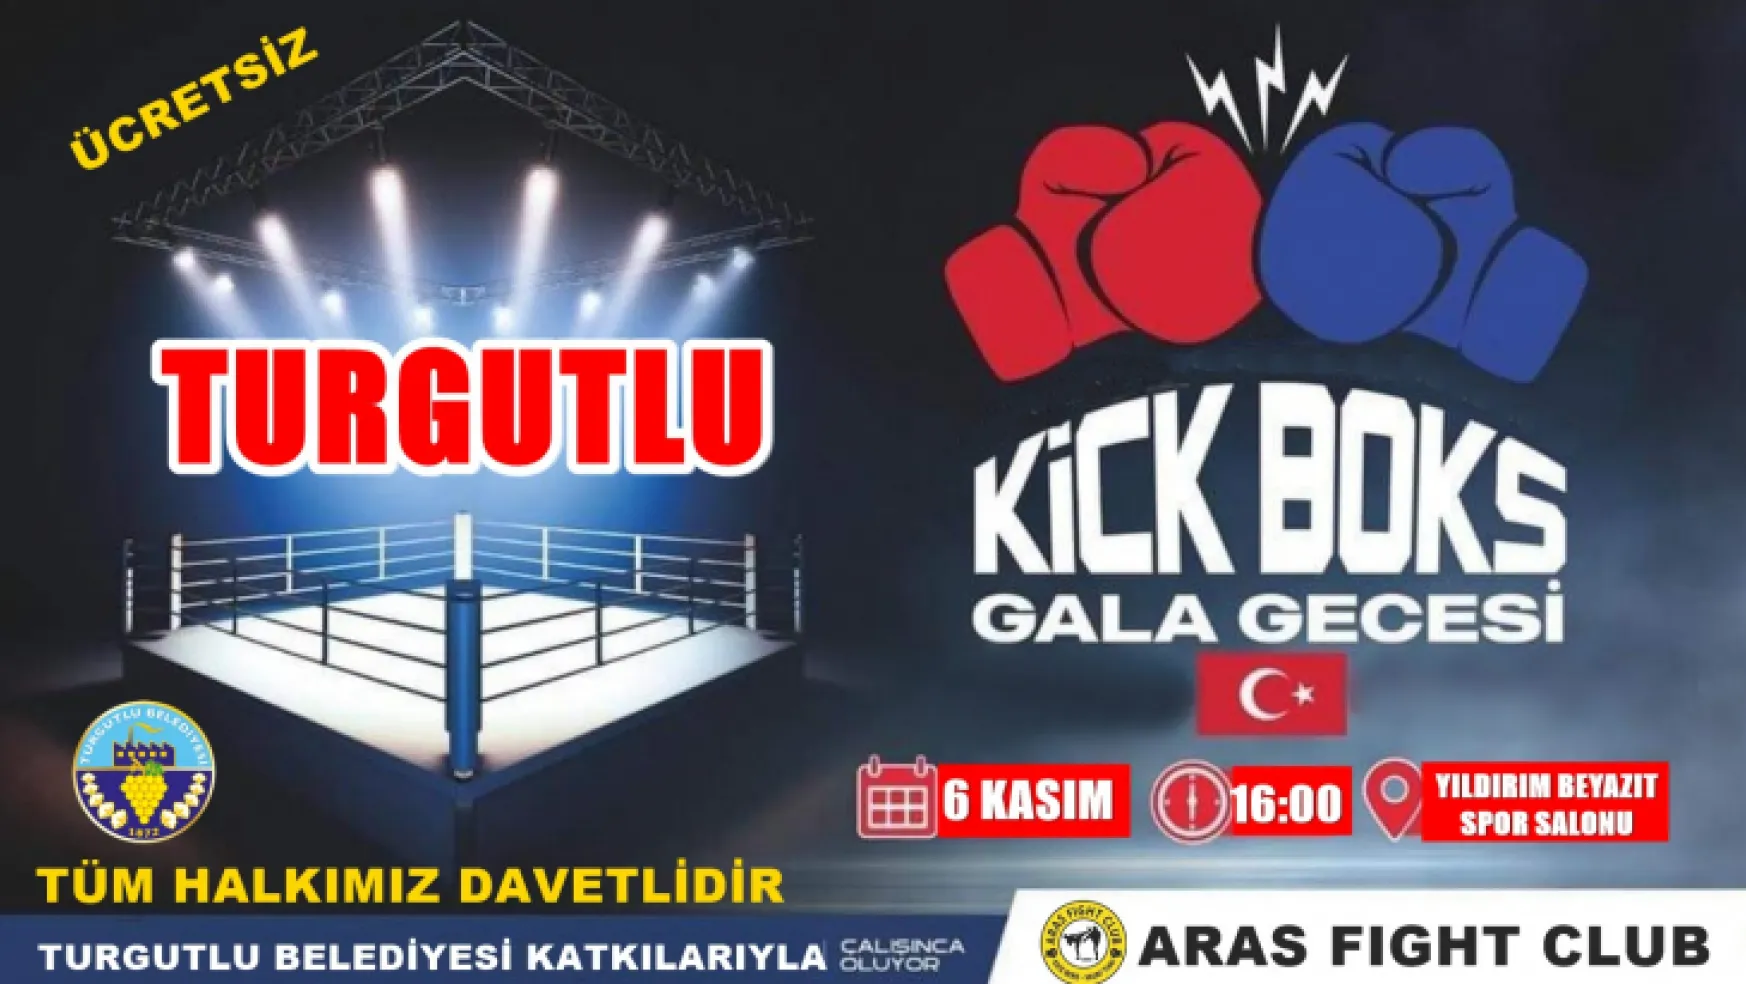 Turgutlu'da Kick Boks Gala Gecesi Heyacanı